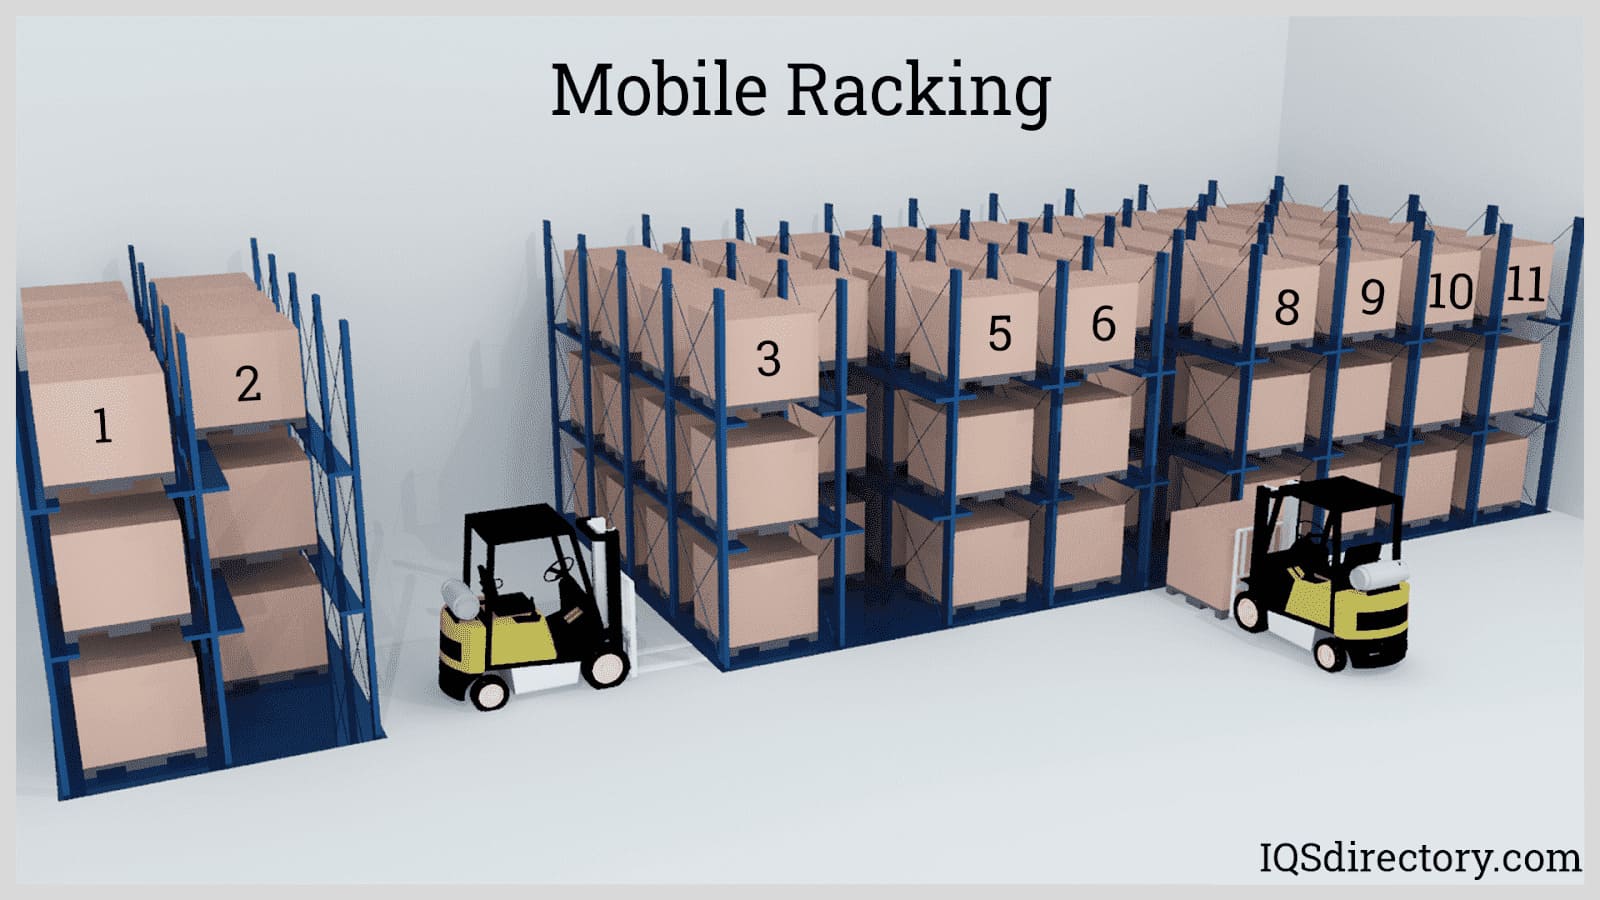 Mobile Racking